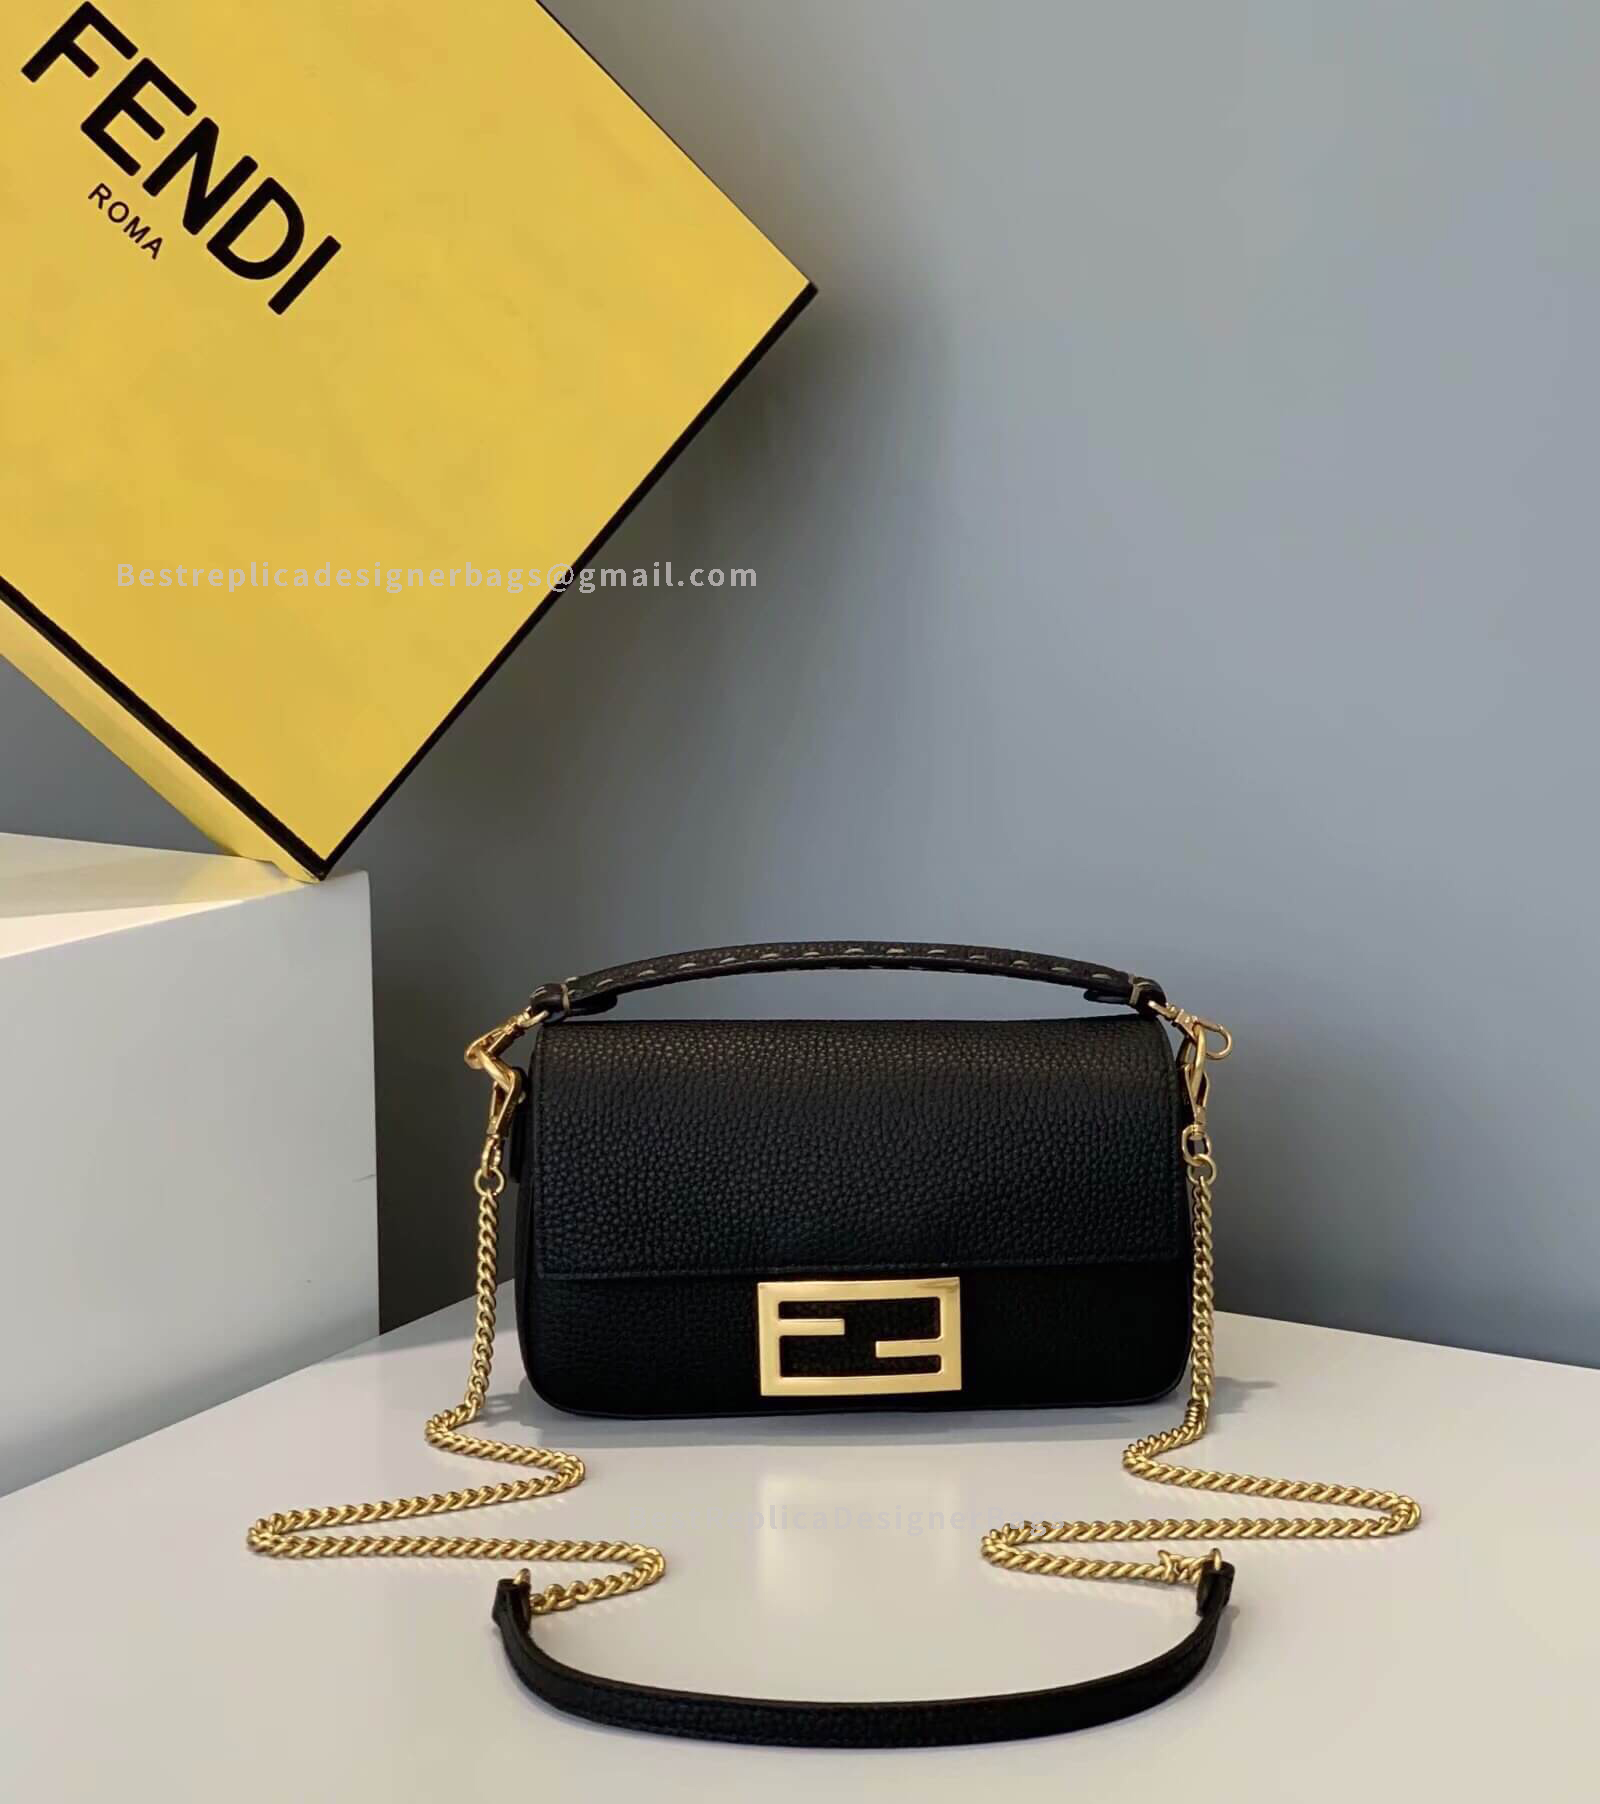 Fendi Baguette Mini Black Leather Bag GHW 306S - Best Fendi Replica